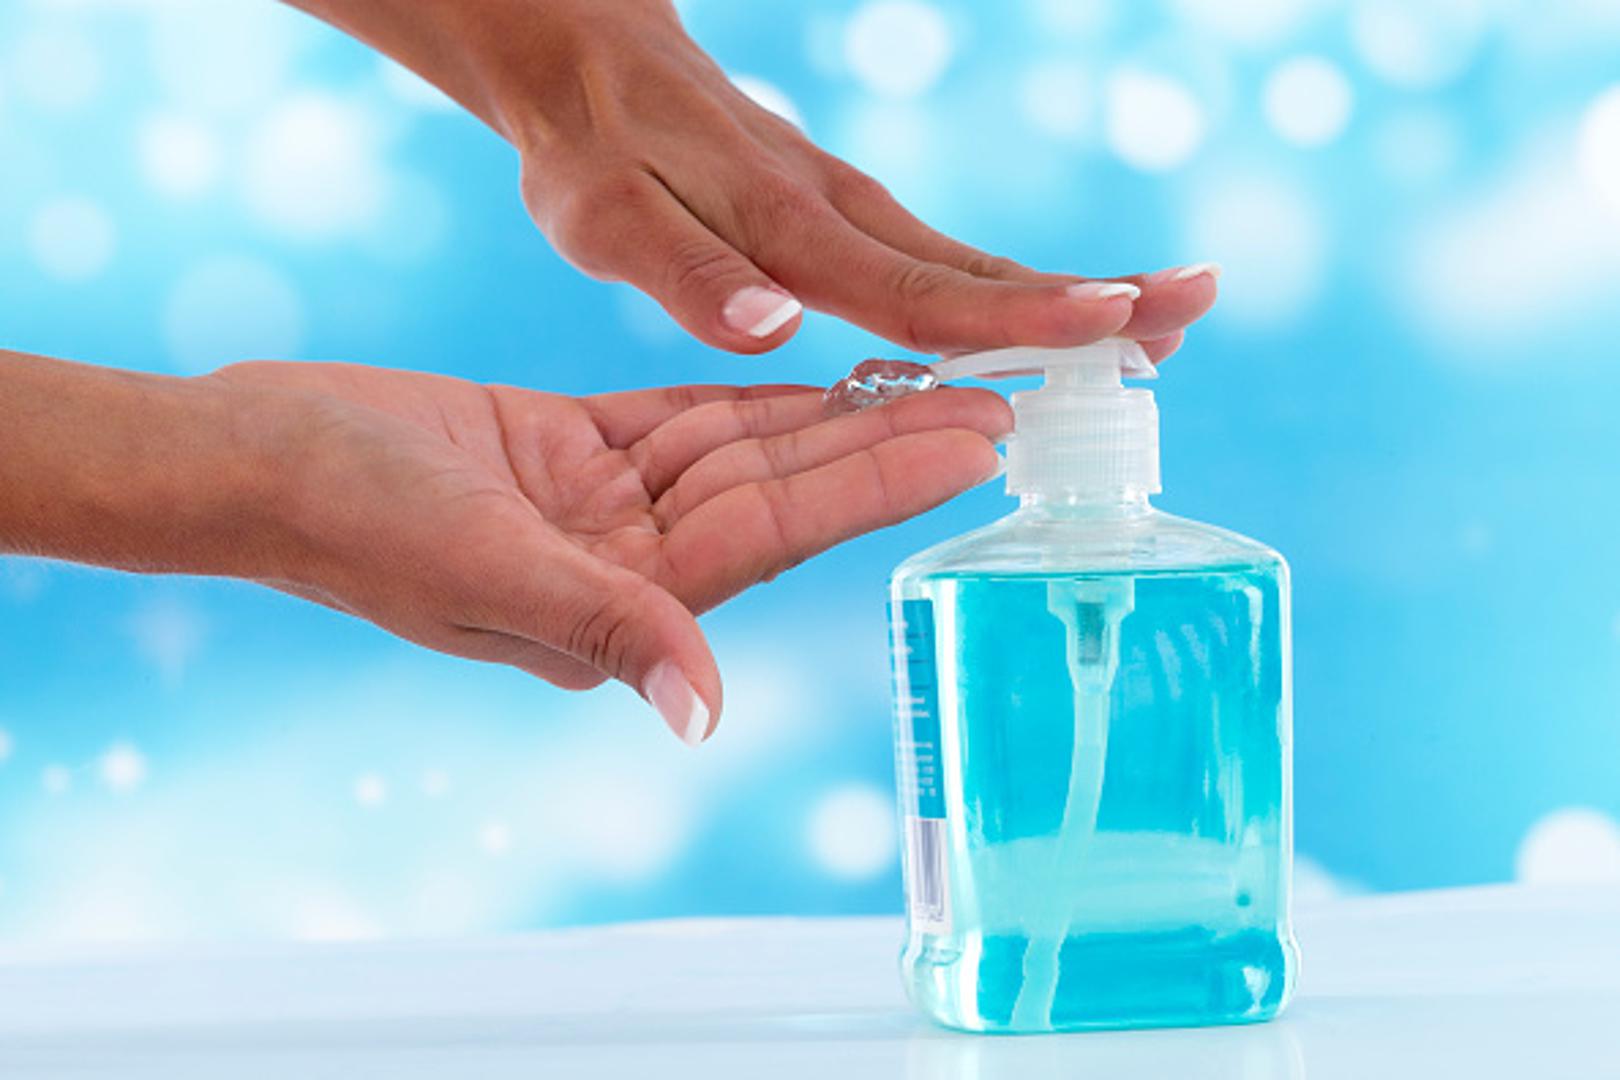 Pretjerano pranje ruku uzrokovat će slabiju otpornost na bakterije stoga je to loša ideja...